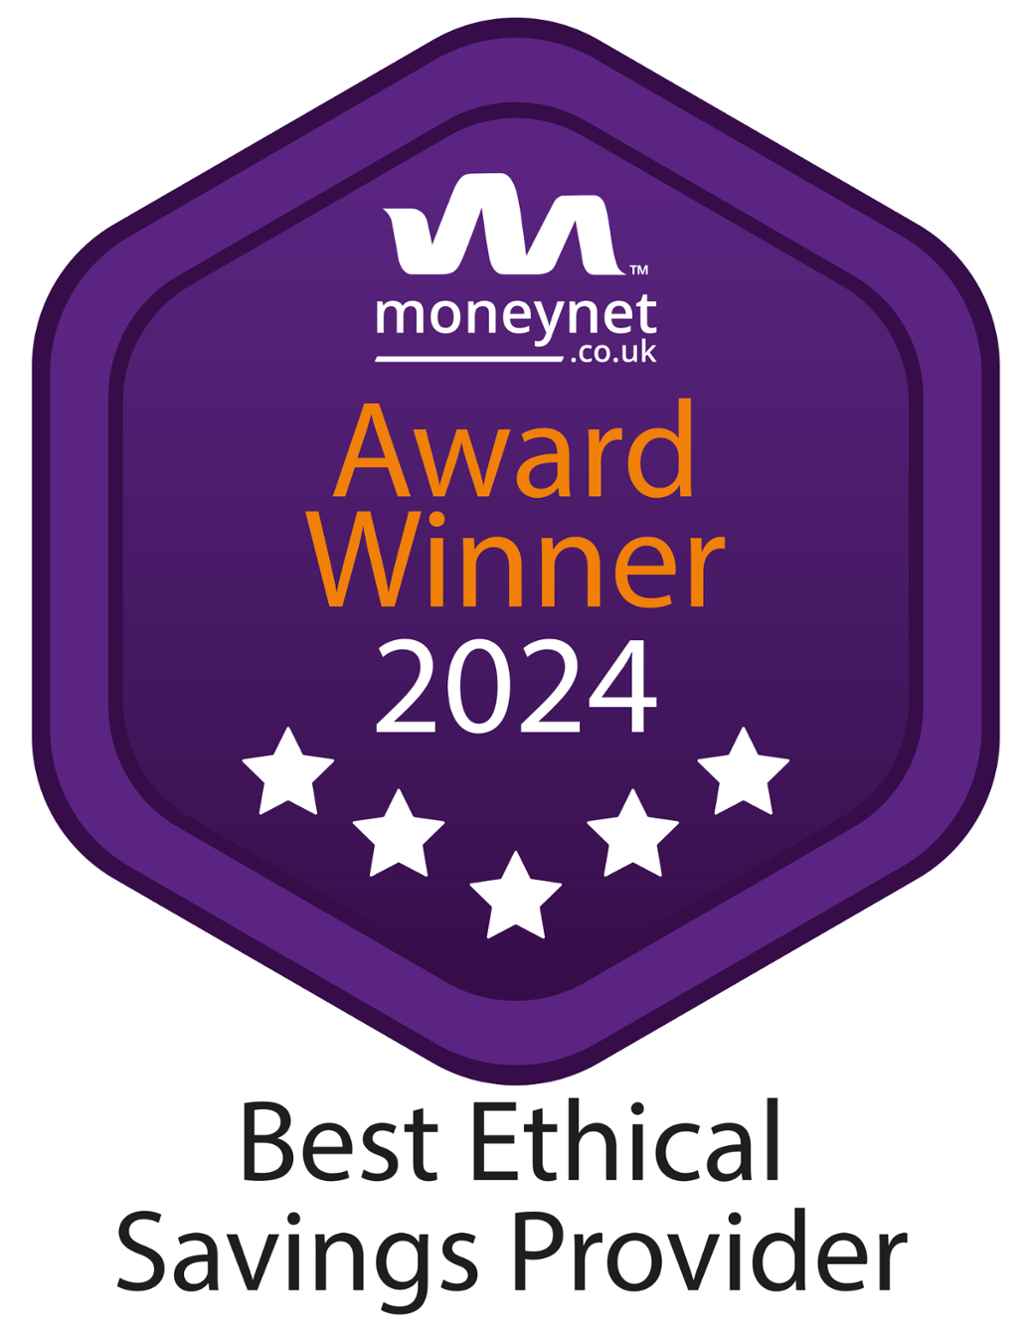 Moneynet award winner 2024 best ethical savings provider